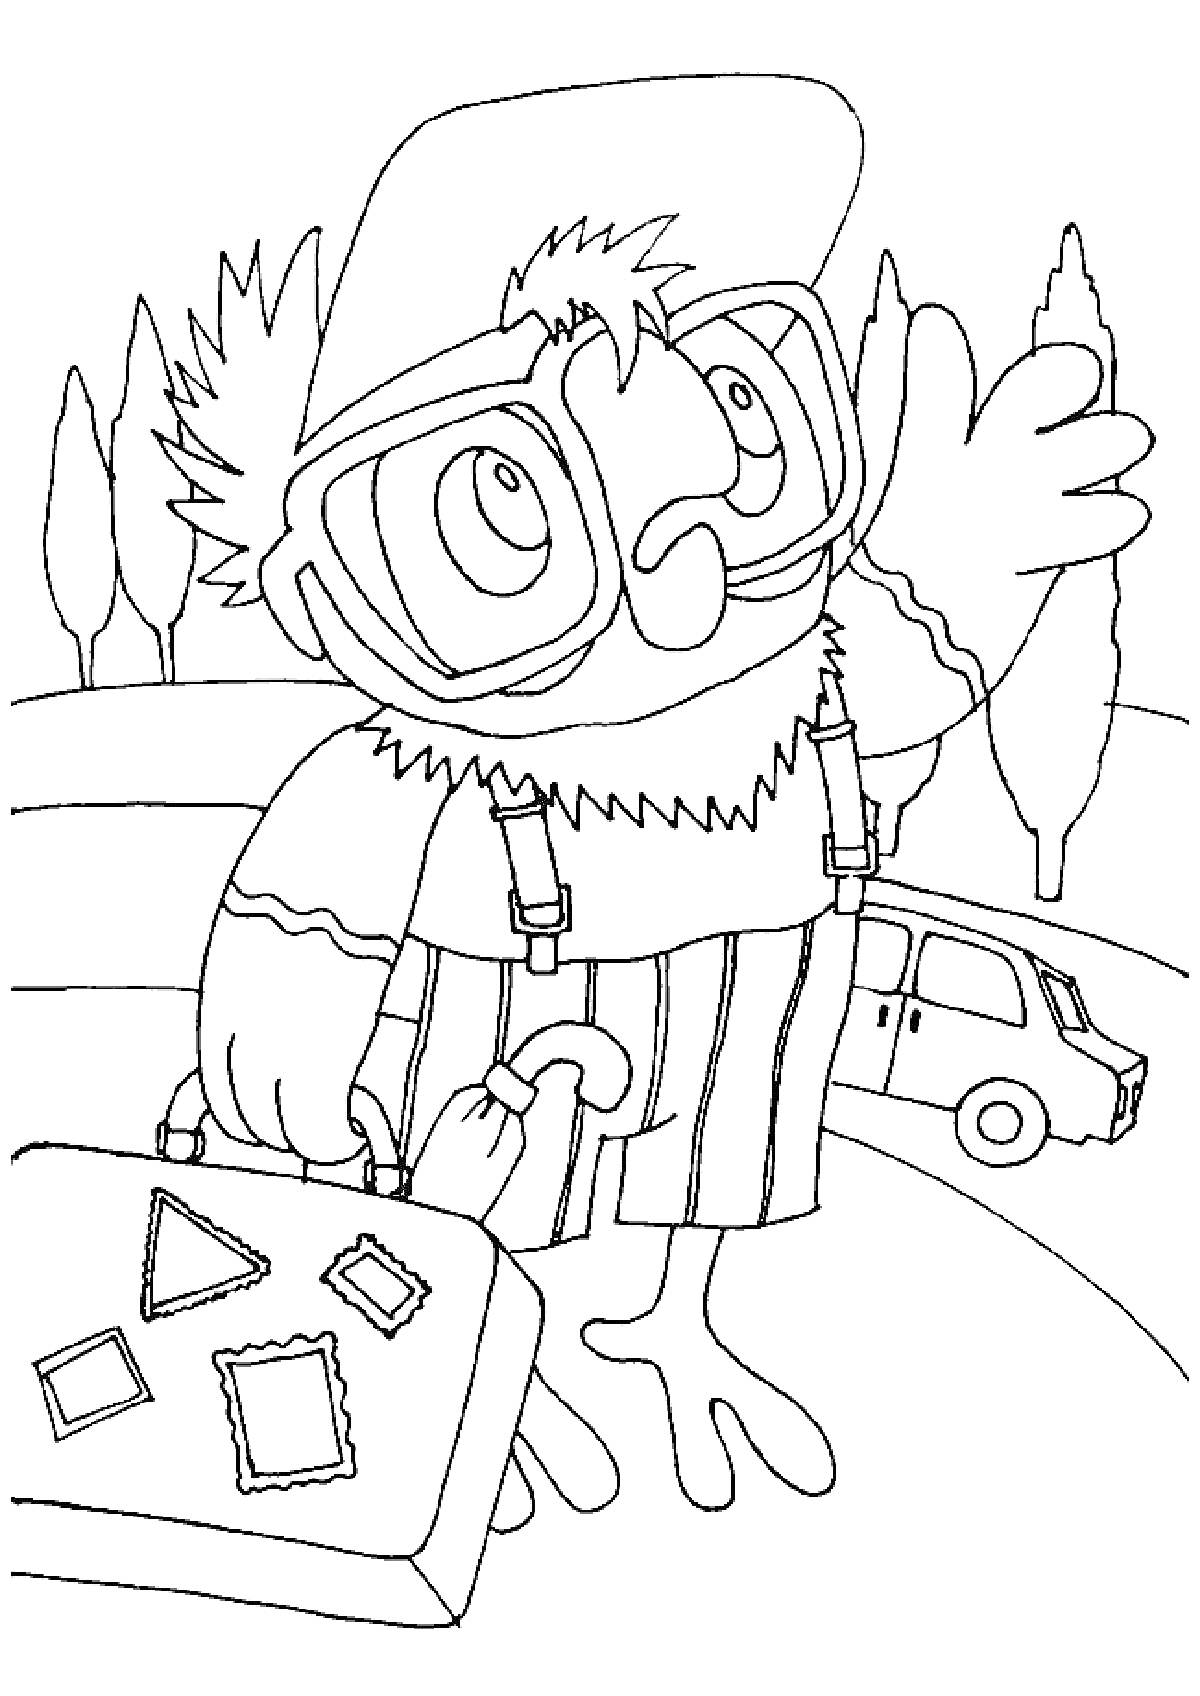 Попугай Кеша с чемоданом на улице рядом с деревьями и машиной